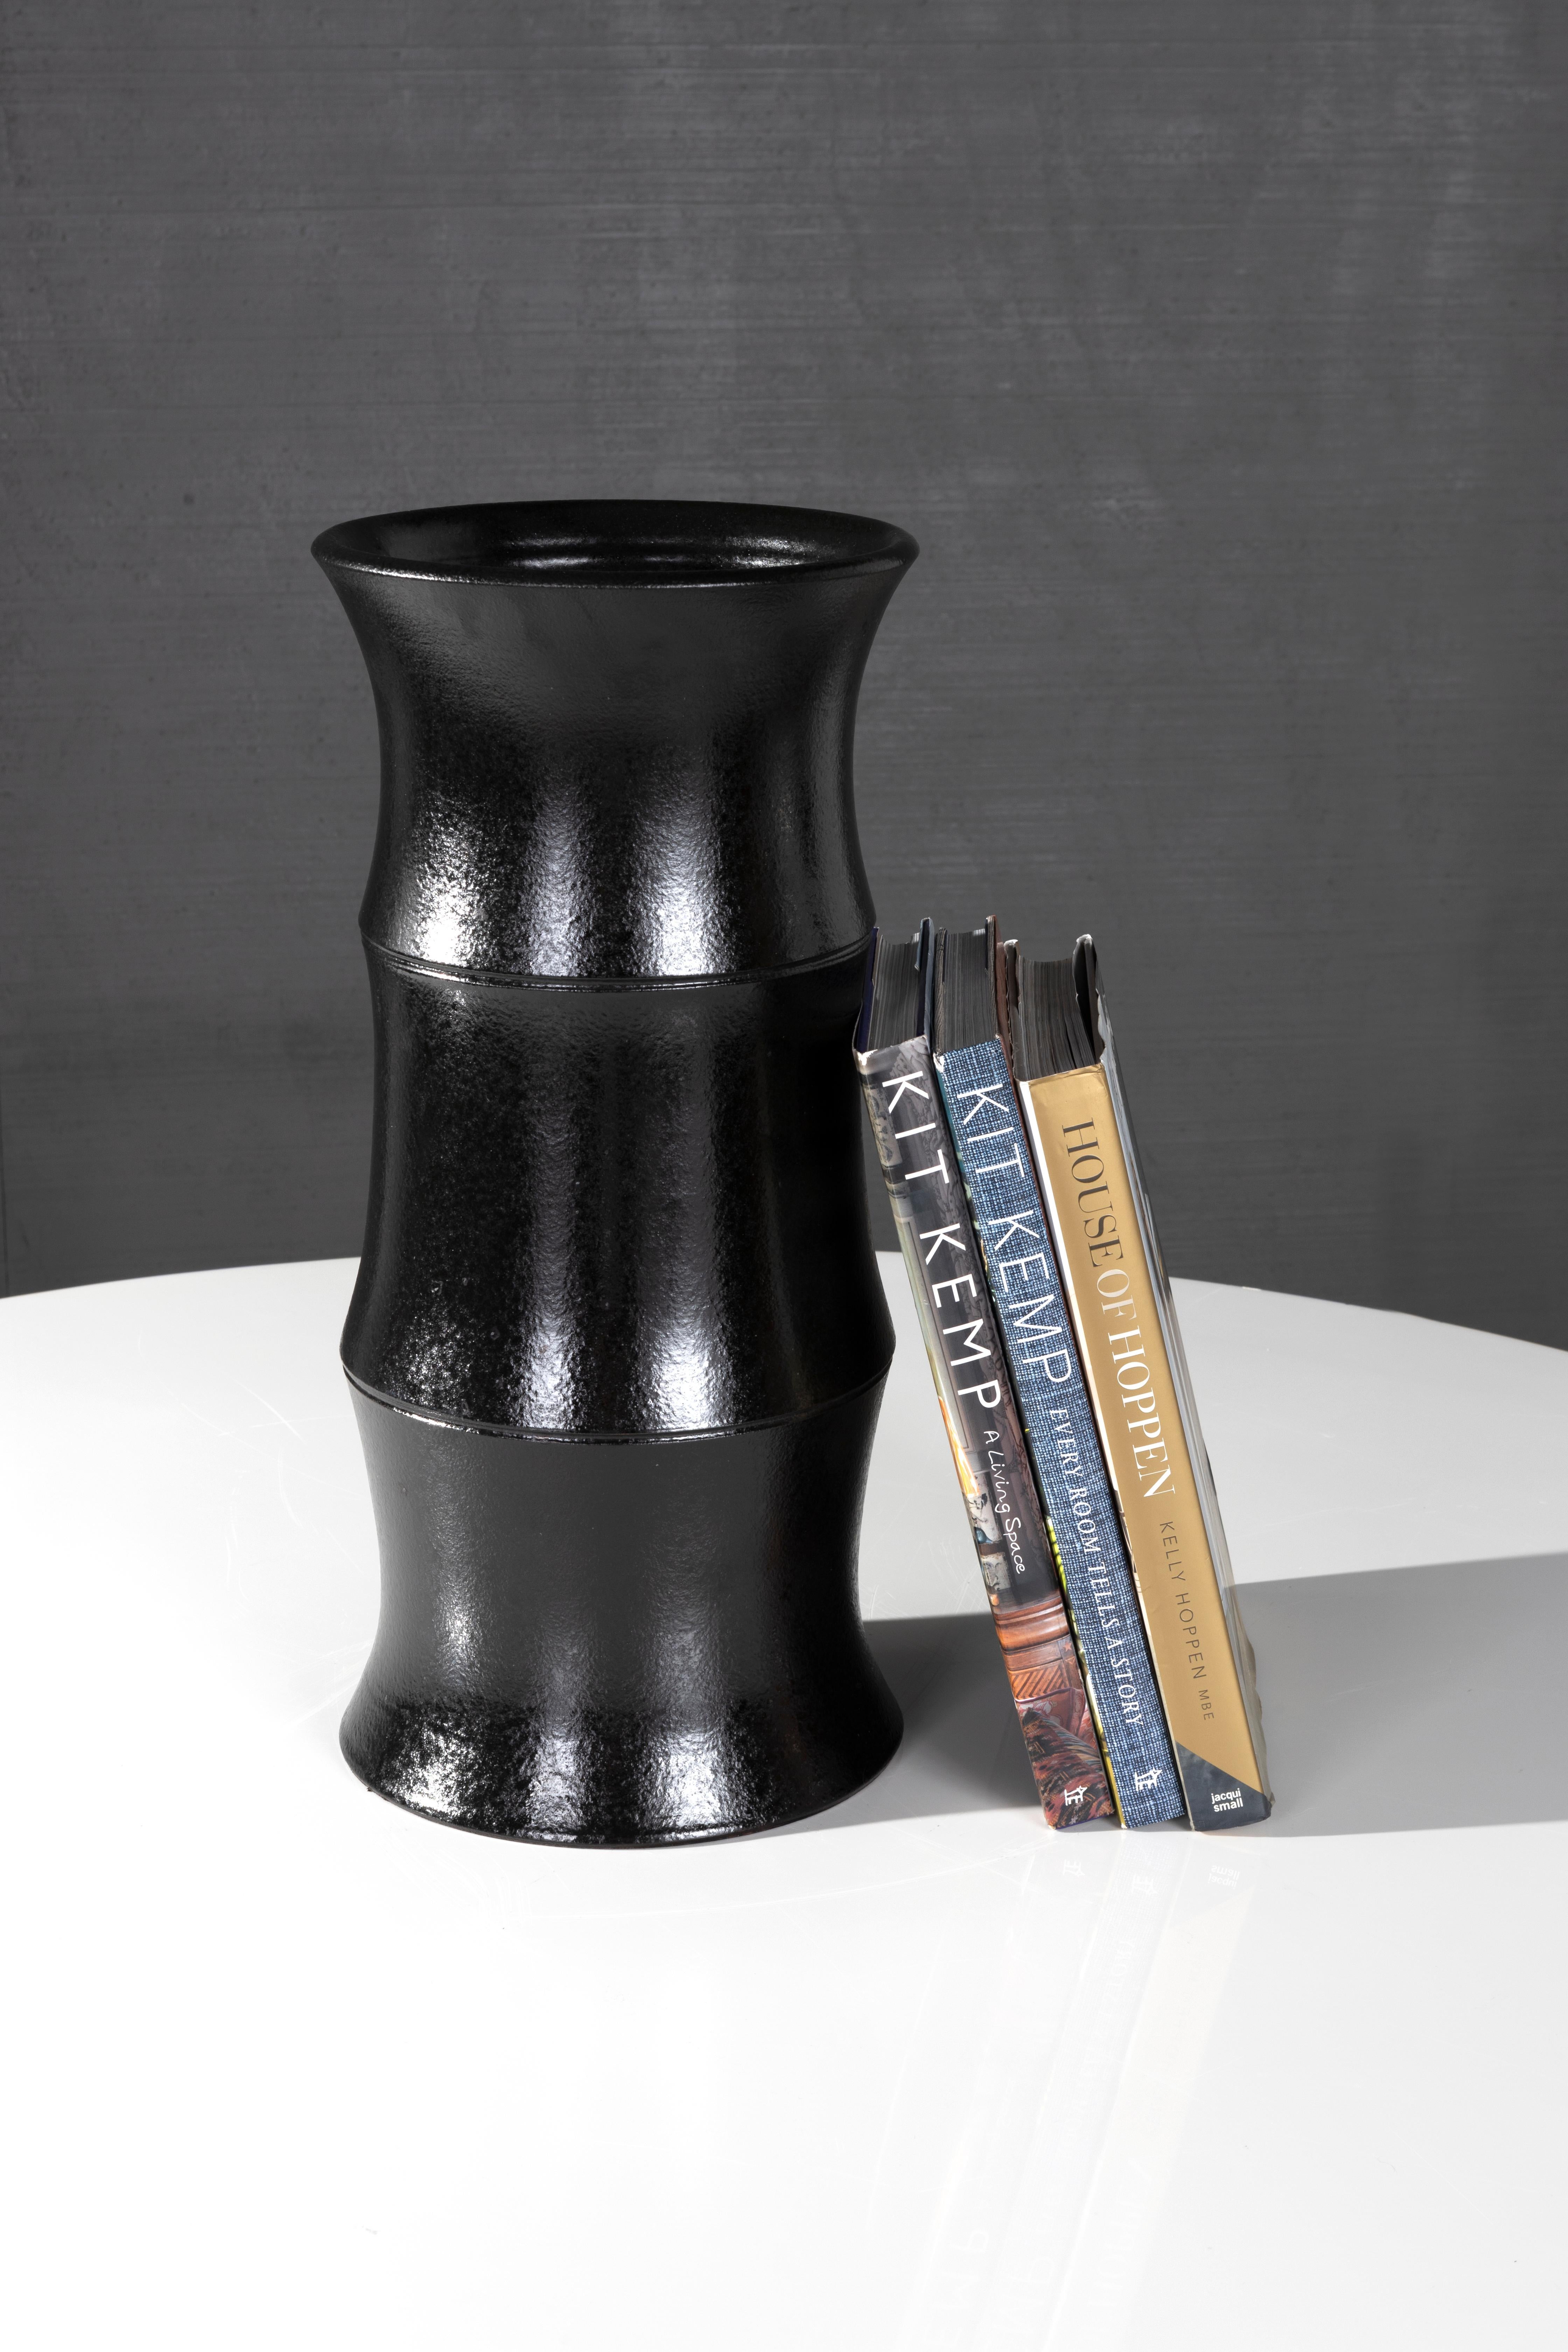 Le vase Také, la dernière nouveauté de la ligne RENG, est un vase en forme de bambou en terre cuite émaillée d'ébène, inspiré de la lampe de table qui porte le même nom.

Toutes les pièces de la ligne RENG sont conçues à Dallas, au Texas, par